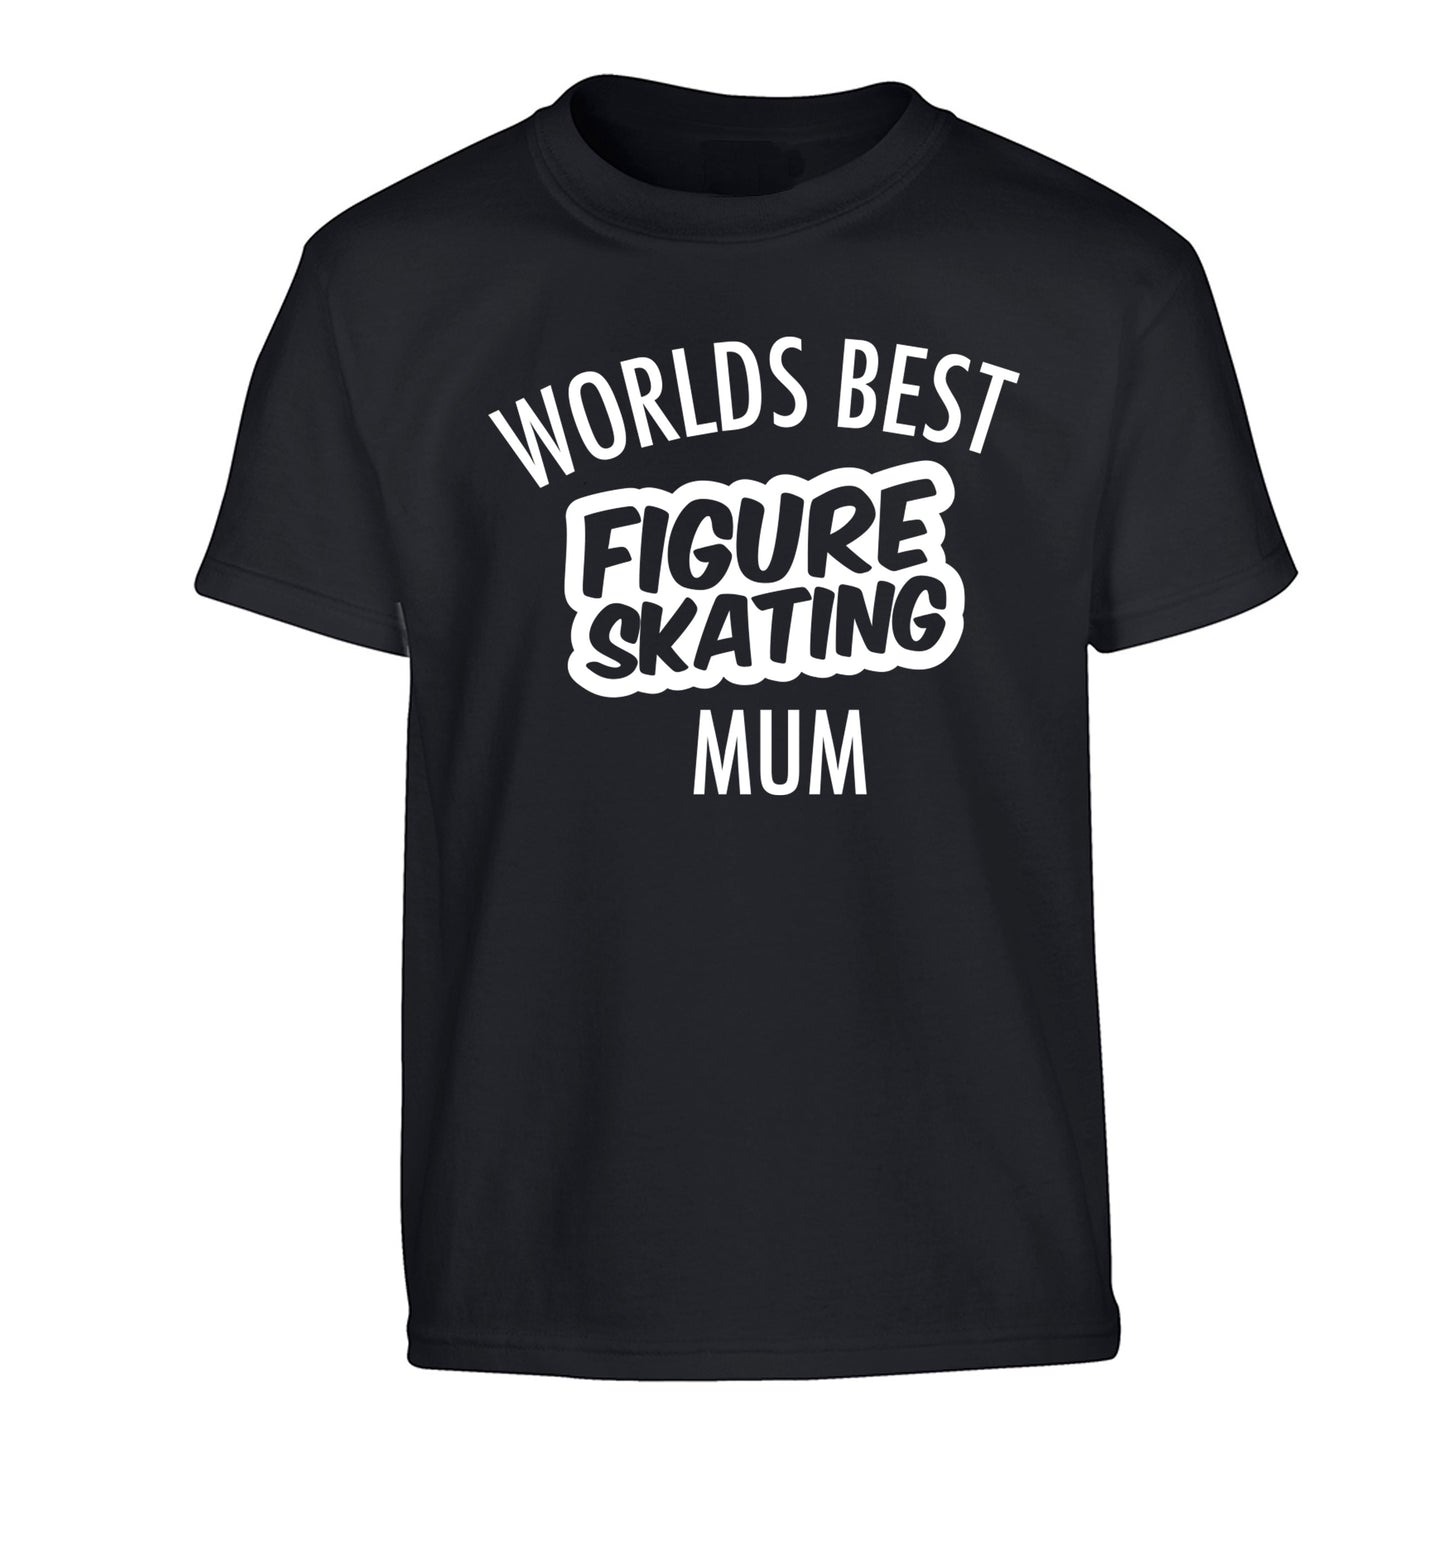 Worlds best figure skating mum Children's black Tshirt 12-14 Years